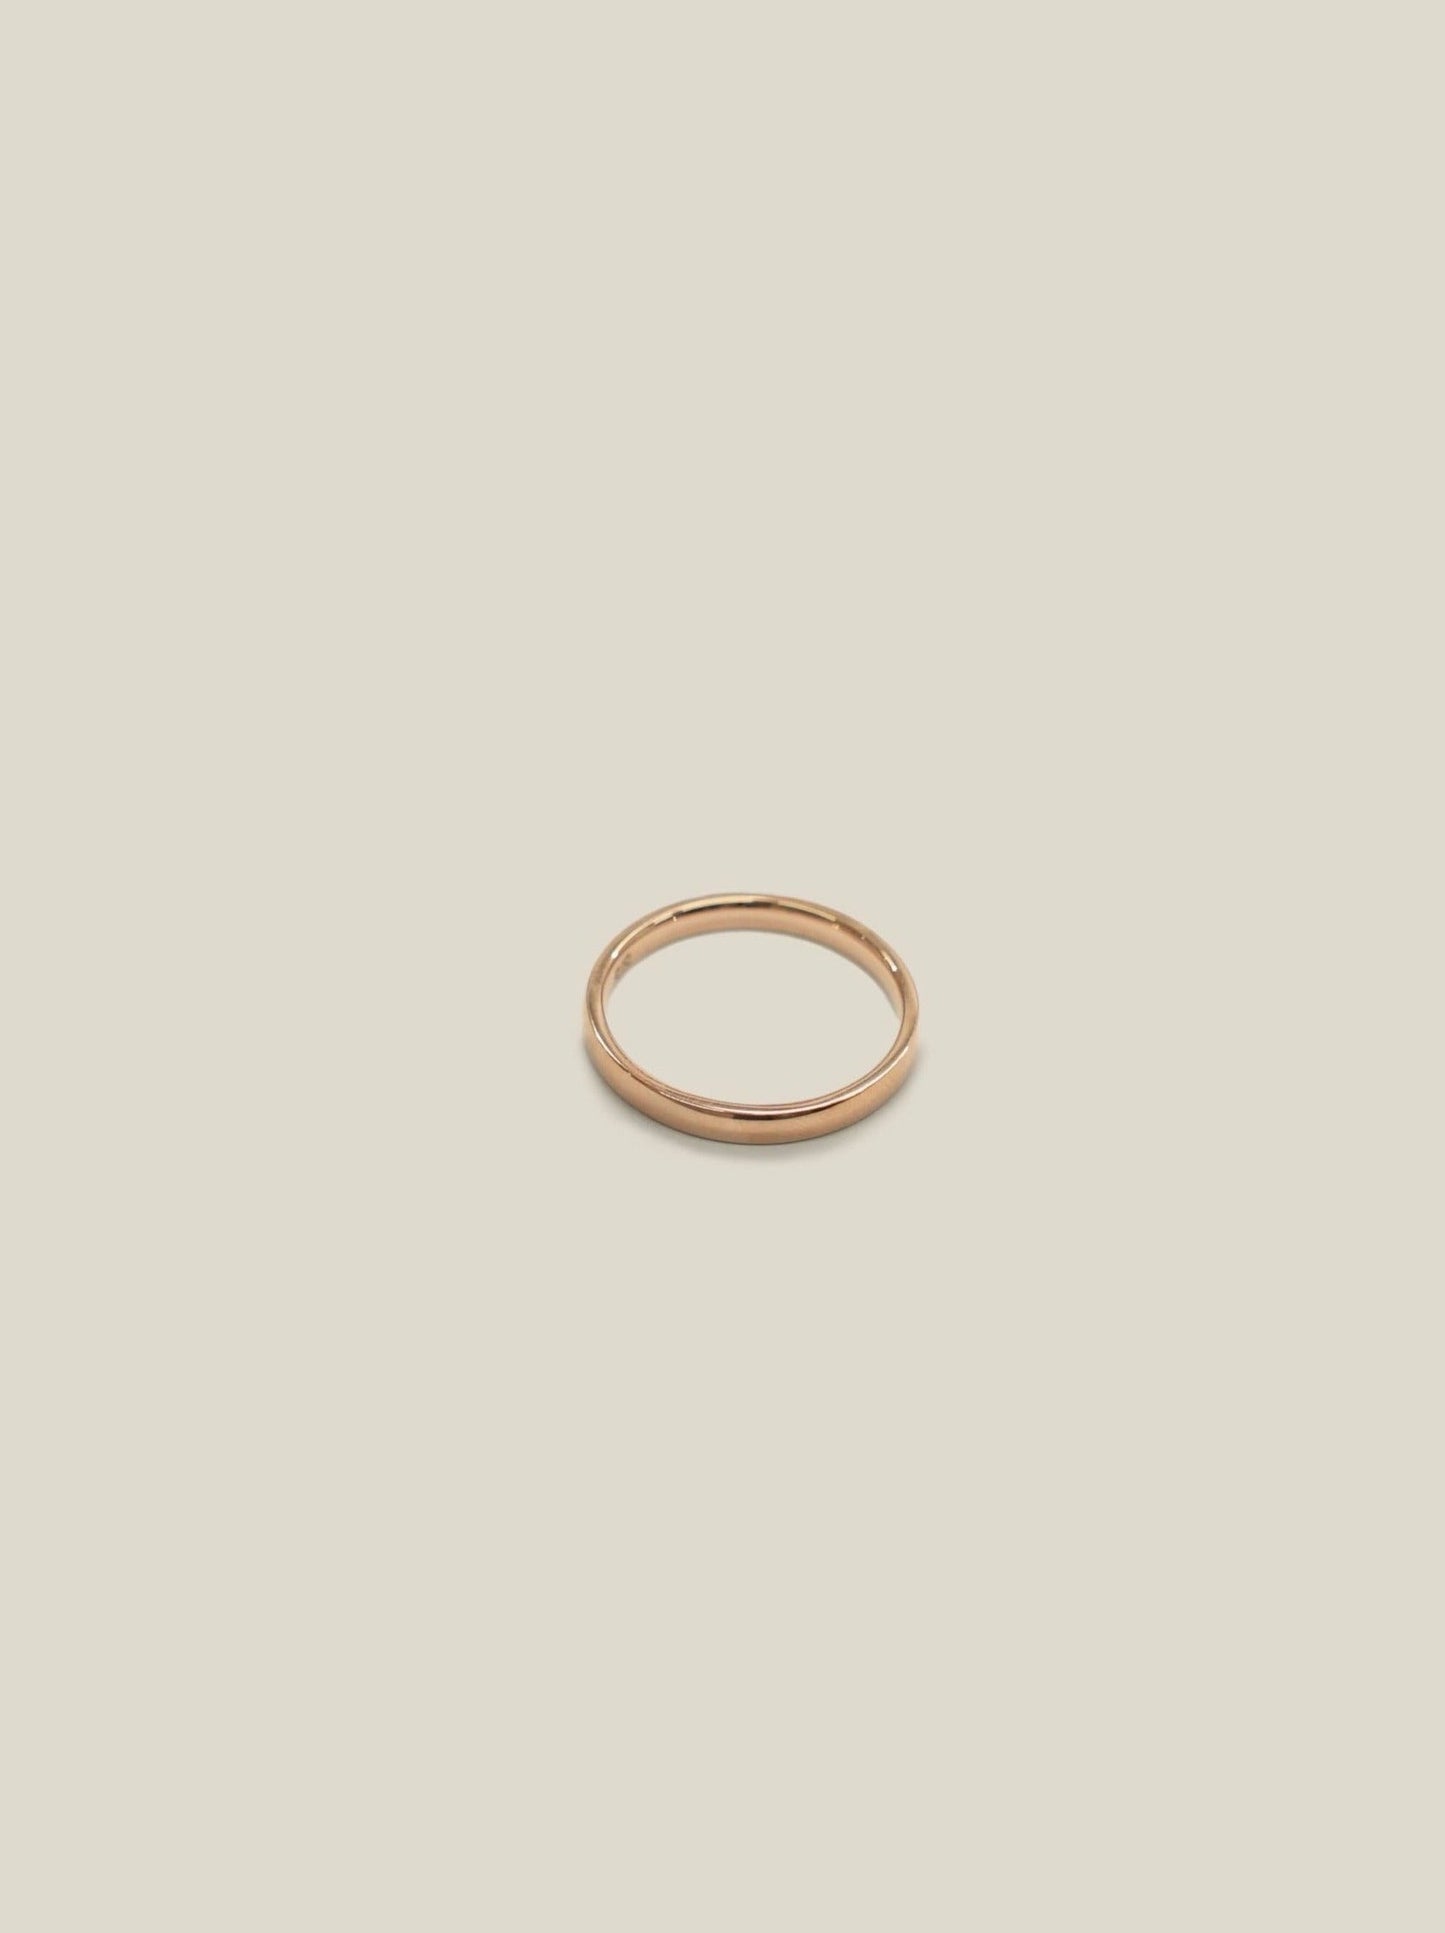 【限定カラー】surgical ring / pink gold / 316L(金属アレルギー対応)